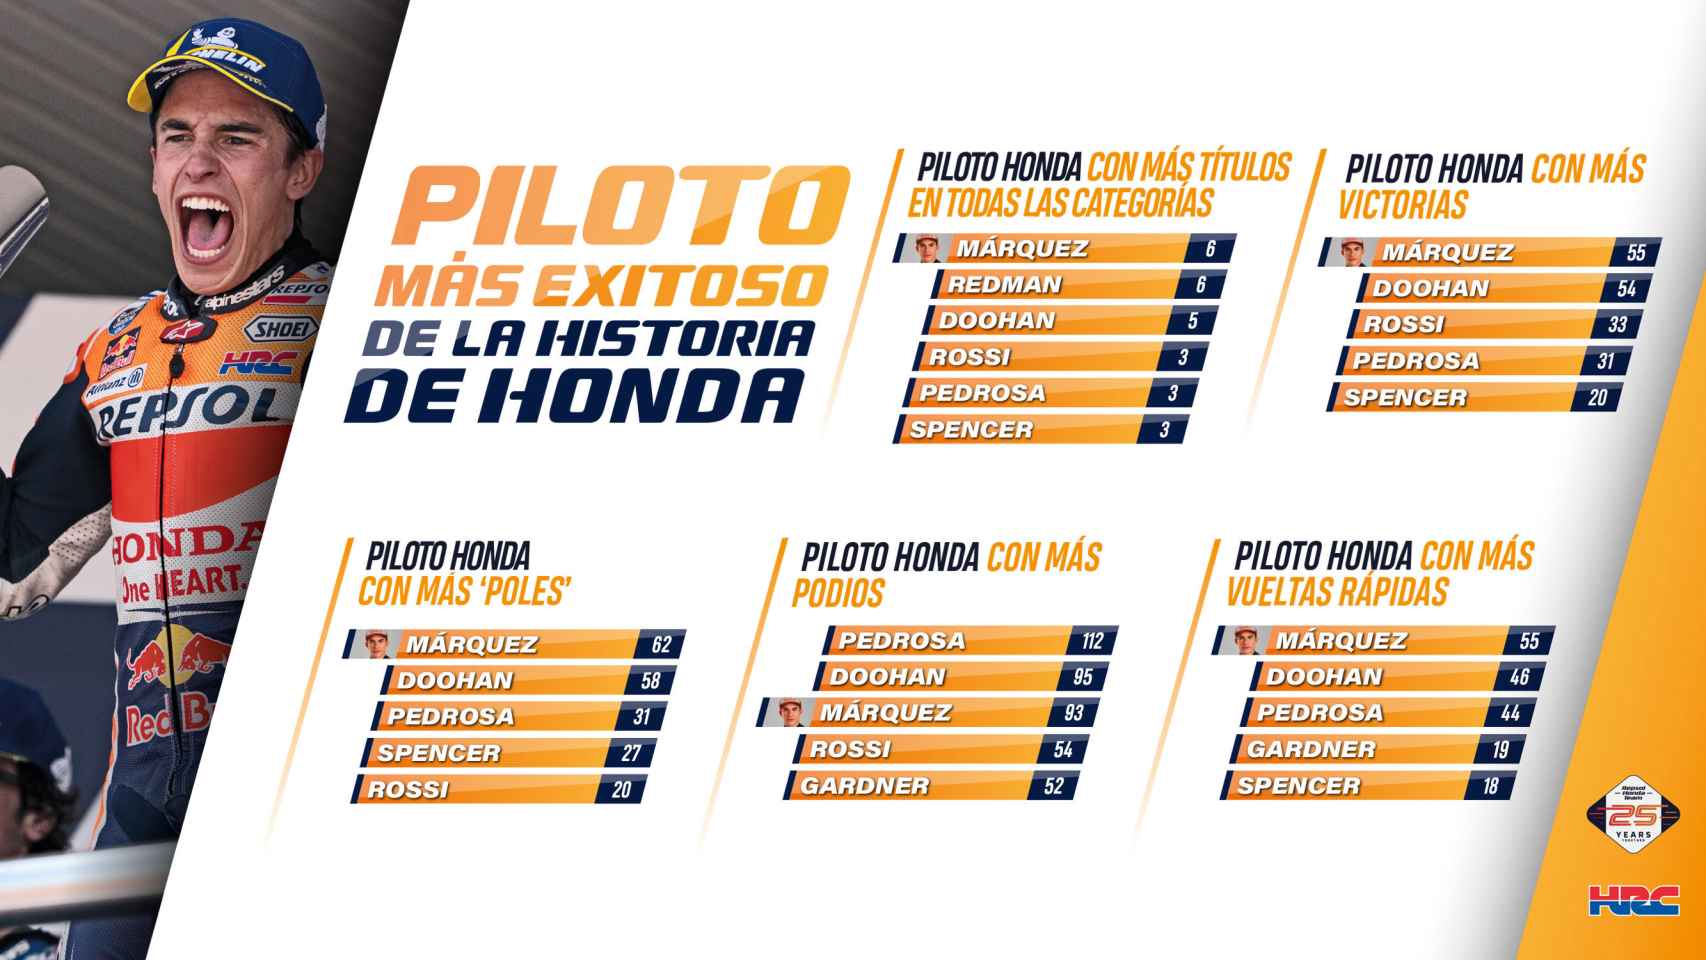 Las 55 victorias de Marc Márquez en MotoGP.